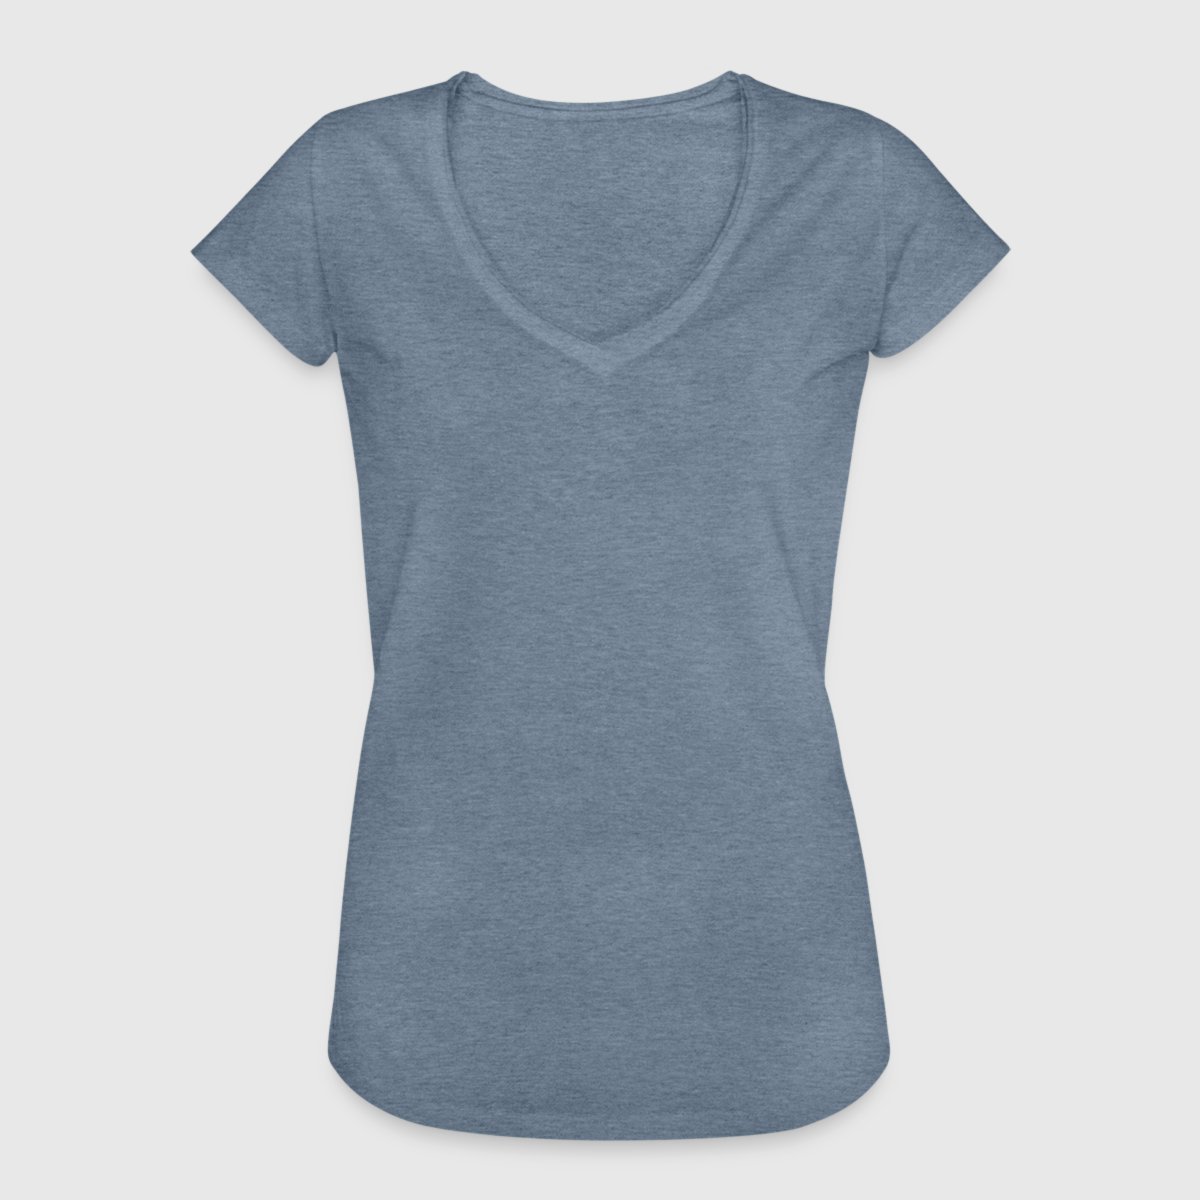 Women's Vintage T-Shirt - Front